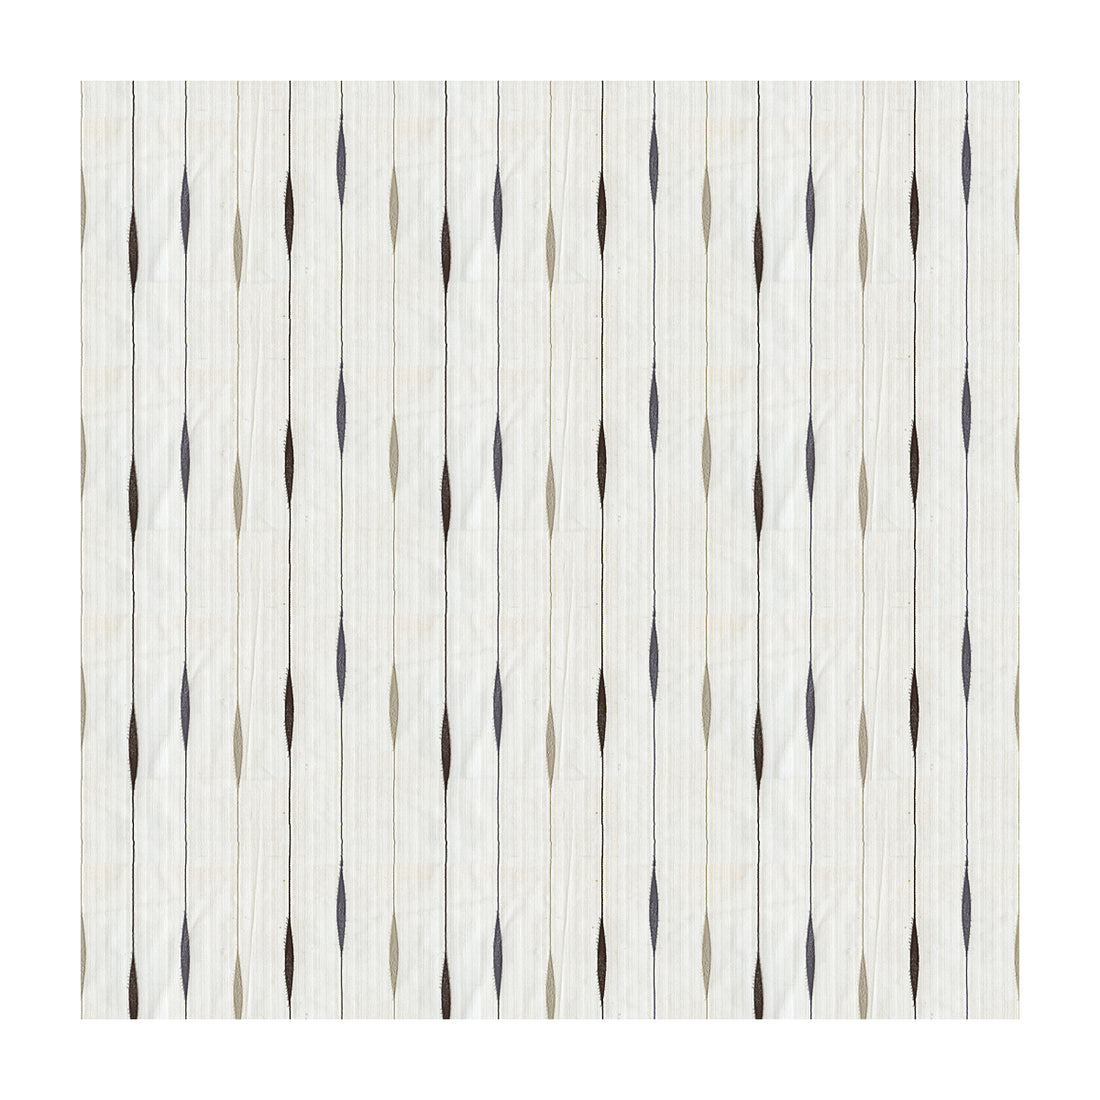 Kravet Basics fabric in 4117-1611 color - pattern 4117.1611.0 - by Kravet Basics